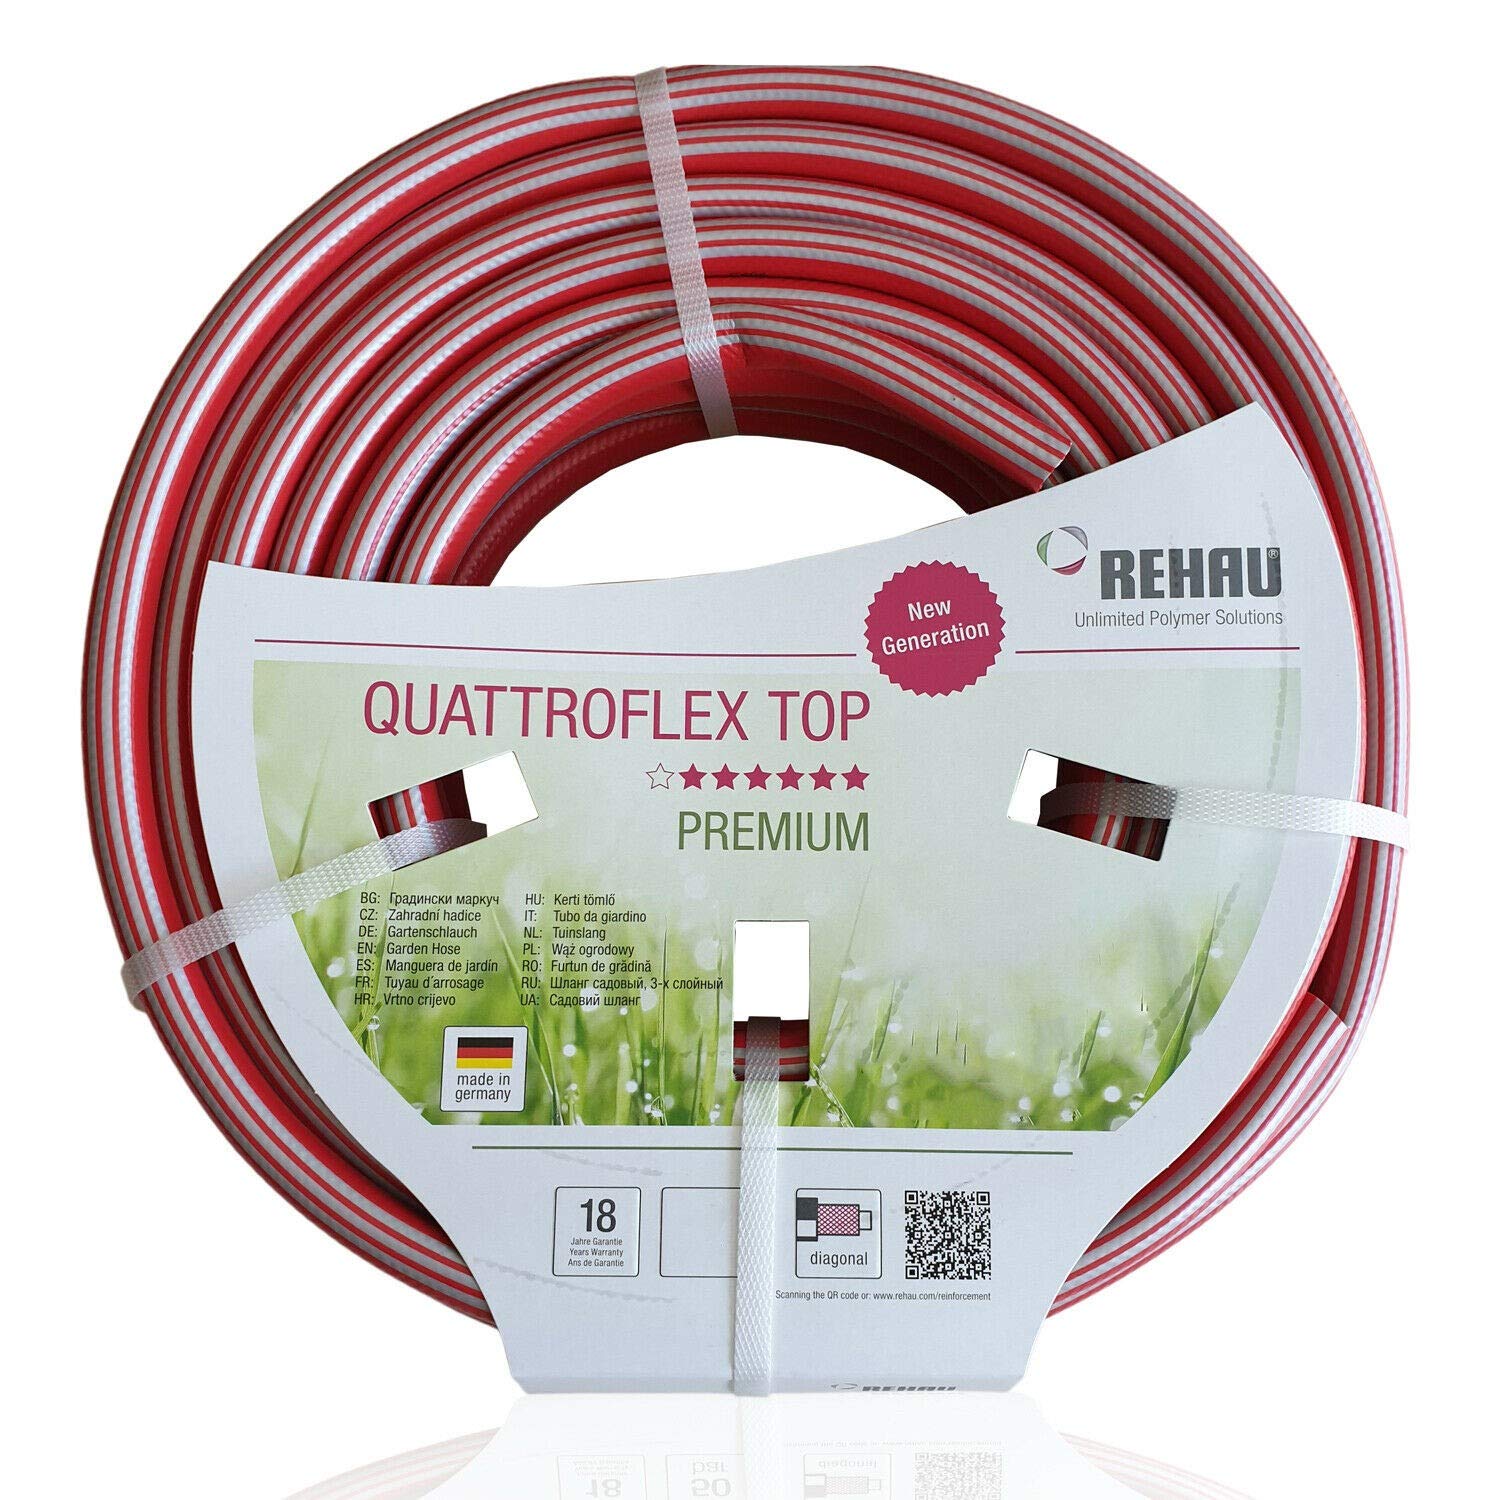 REHAU Premium-Gartenschlauch QUATTROFLEX TOP 1/2 Zoll 50m: sehr flexibel, kein verdrehen, extrem druckfest